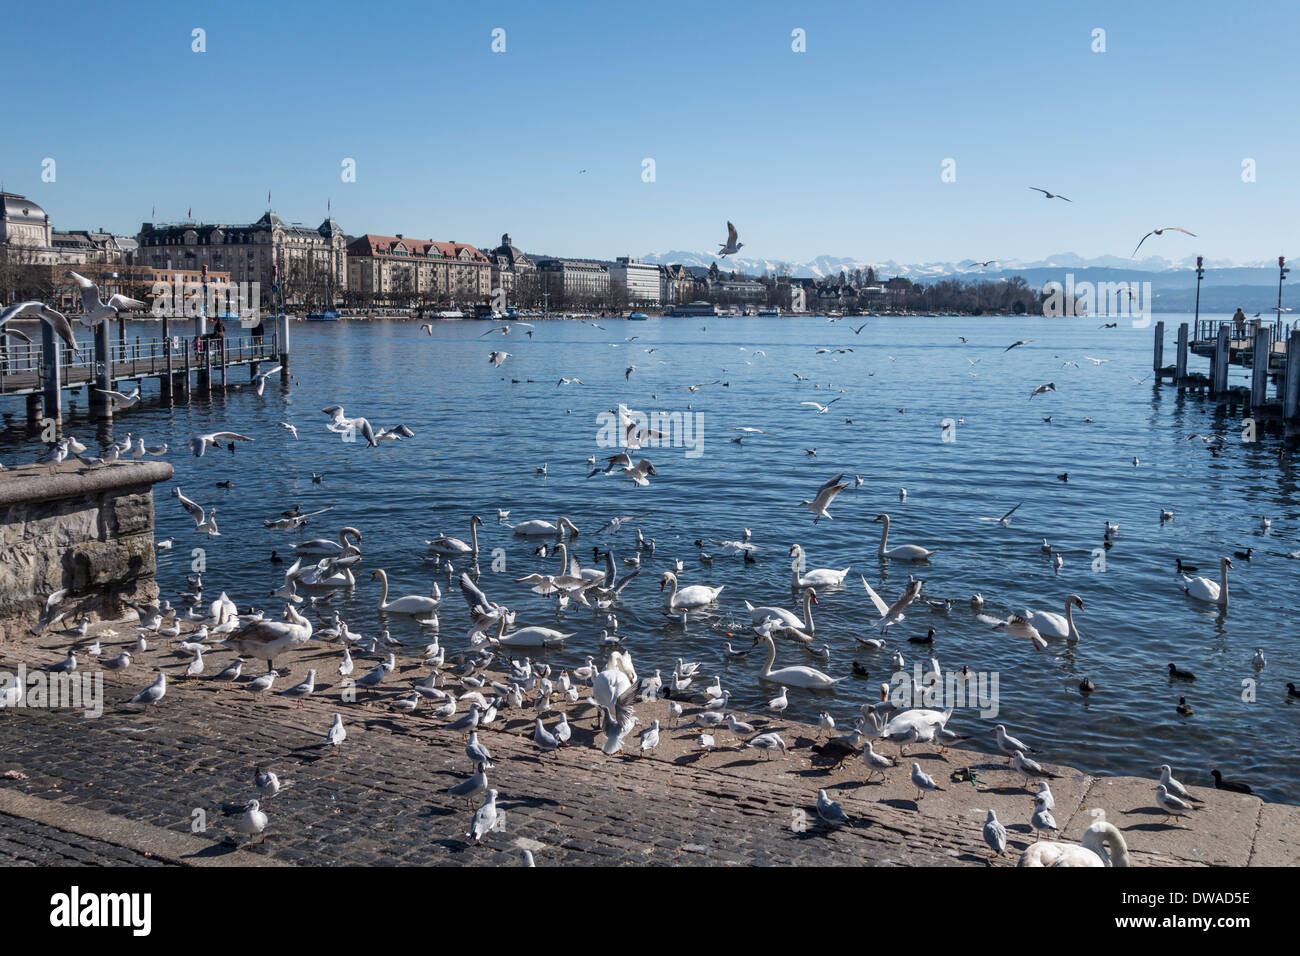 Le Lac de Zurich, des oiseaux et des cygnes, Zurich, Suisse Banque D'Images